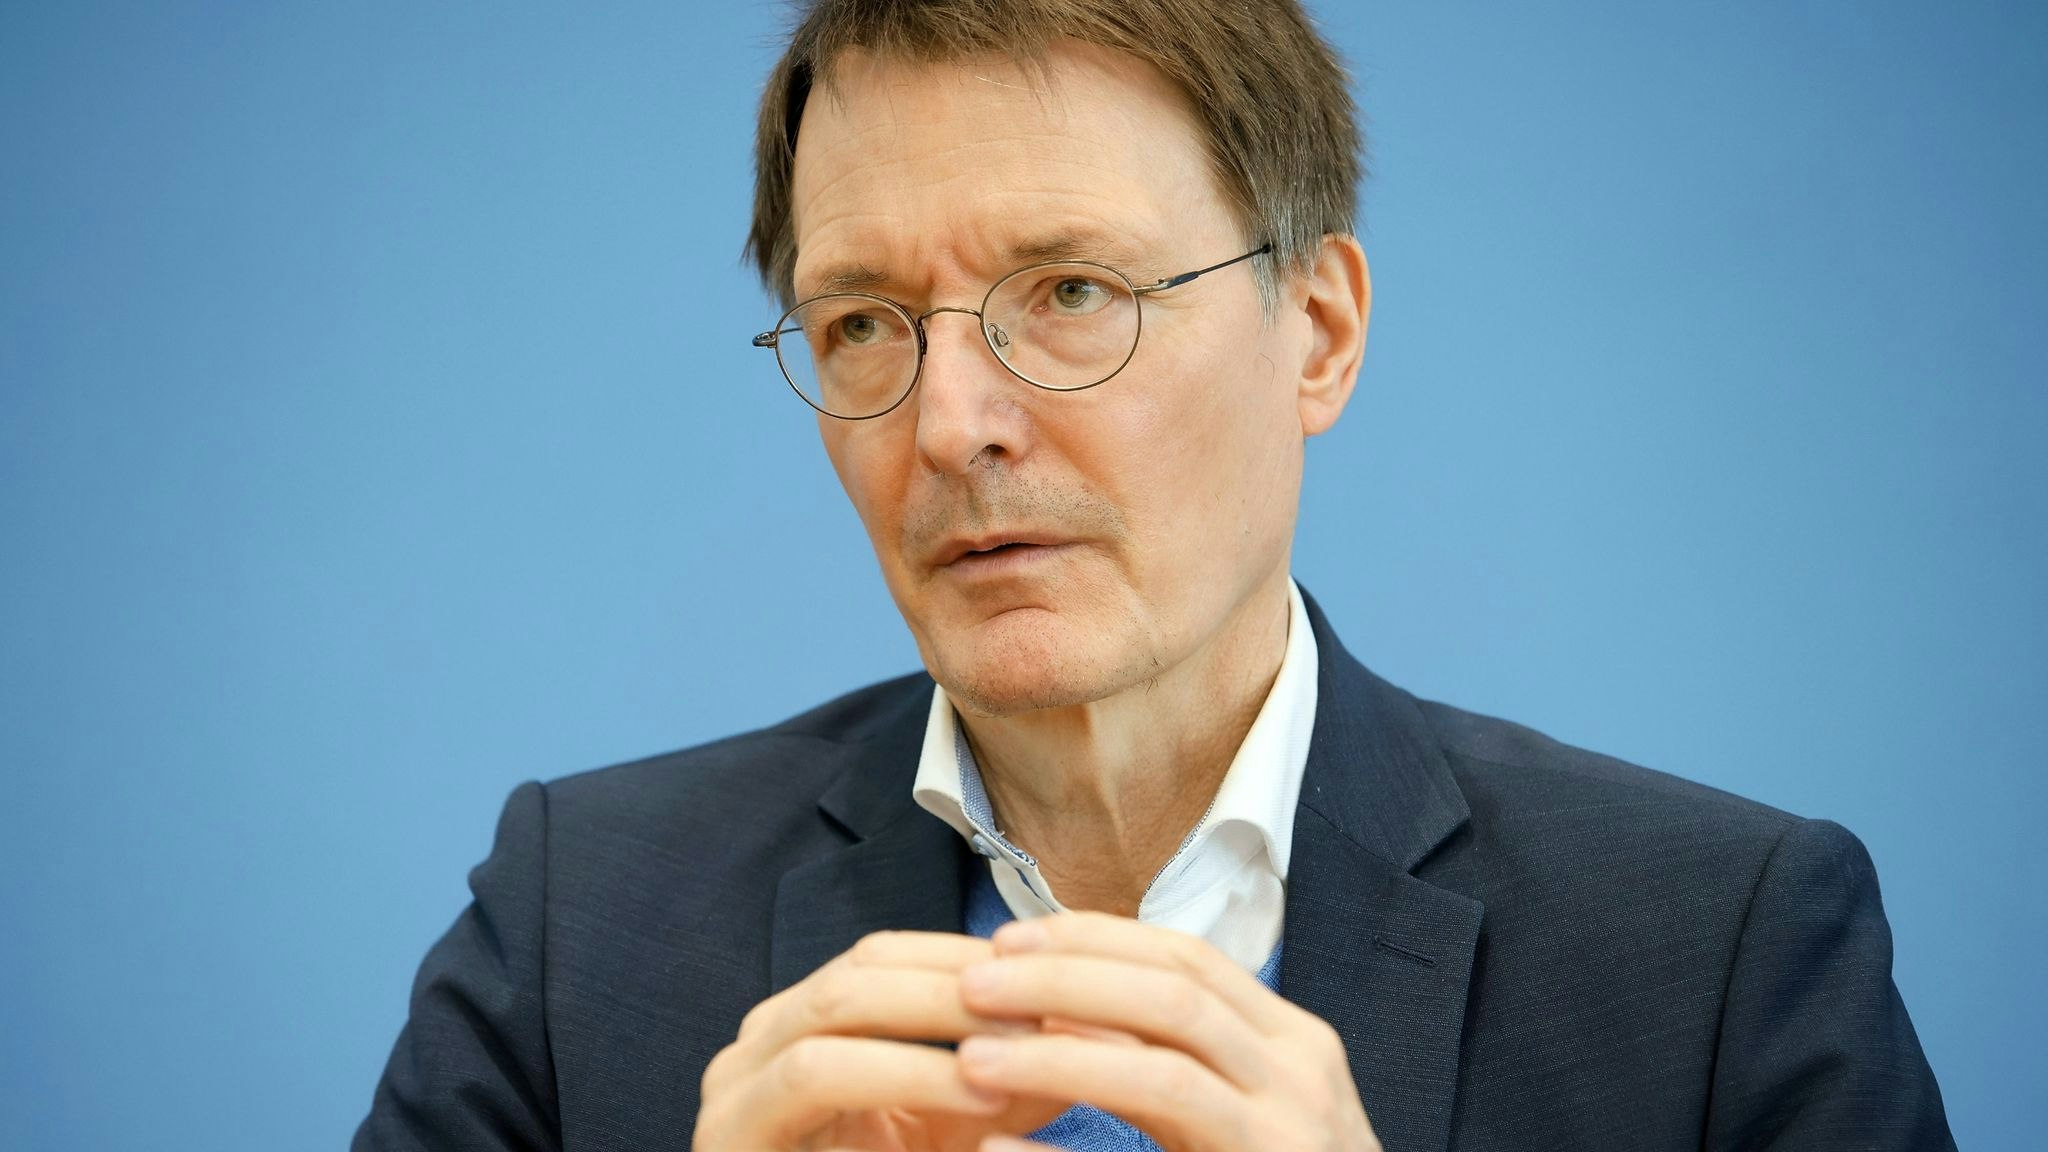 Bundesgesundheitsminister Karl Lauterbach soll im Fokus von Extremisten gestanden haben. Foto: dpa/Koall